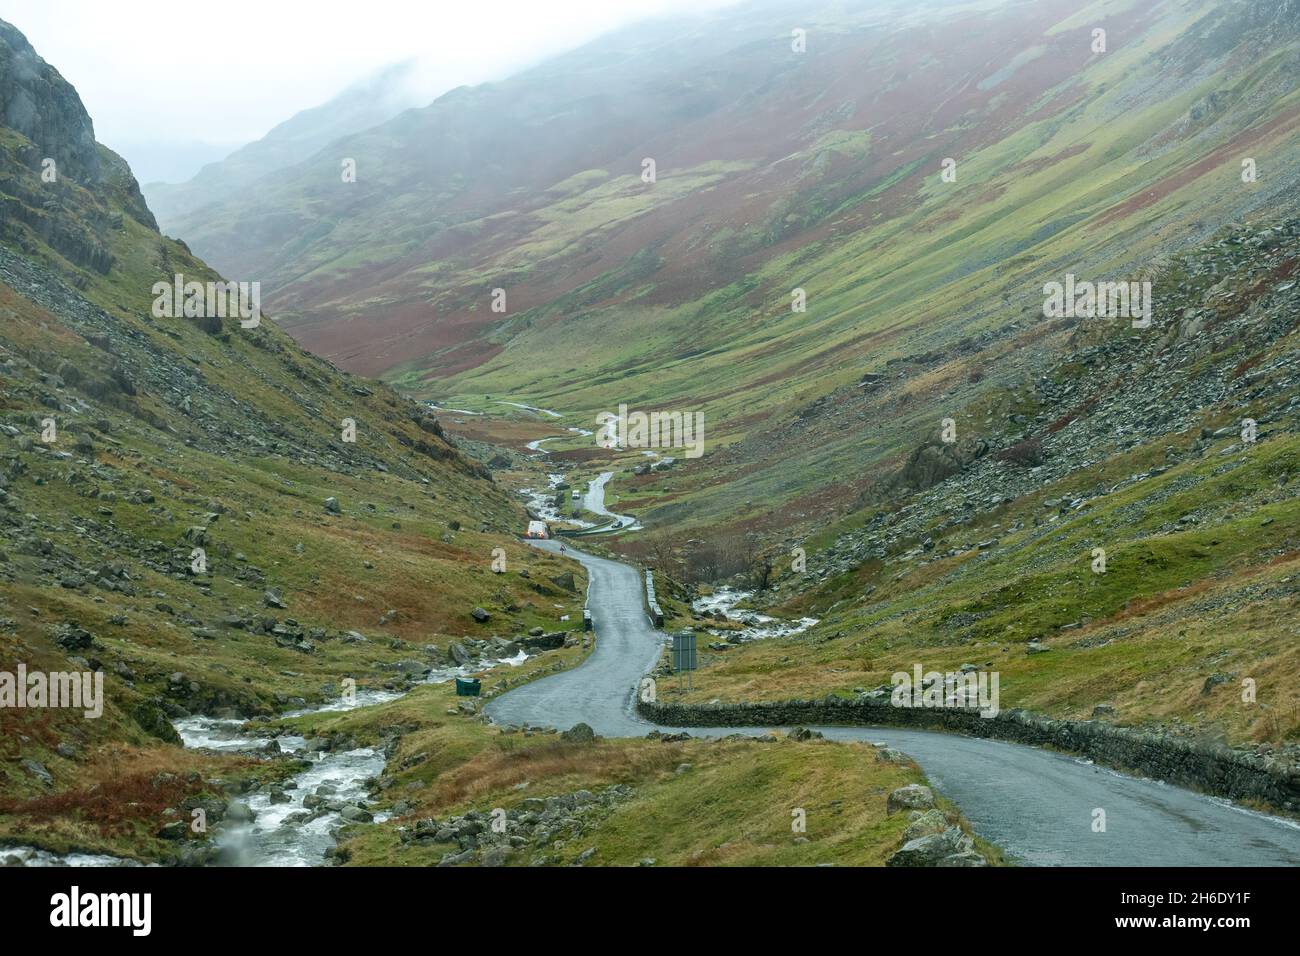 Vue d'automne de Honister Pass dans le Lake District avec des paysages de montagne et une route sinueuse étroite, Cumbria, Angleterre, Royaume-Uni Banque D'Images